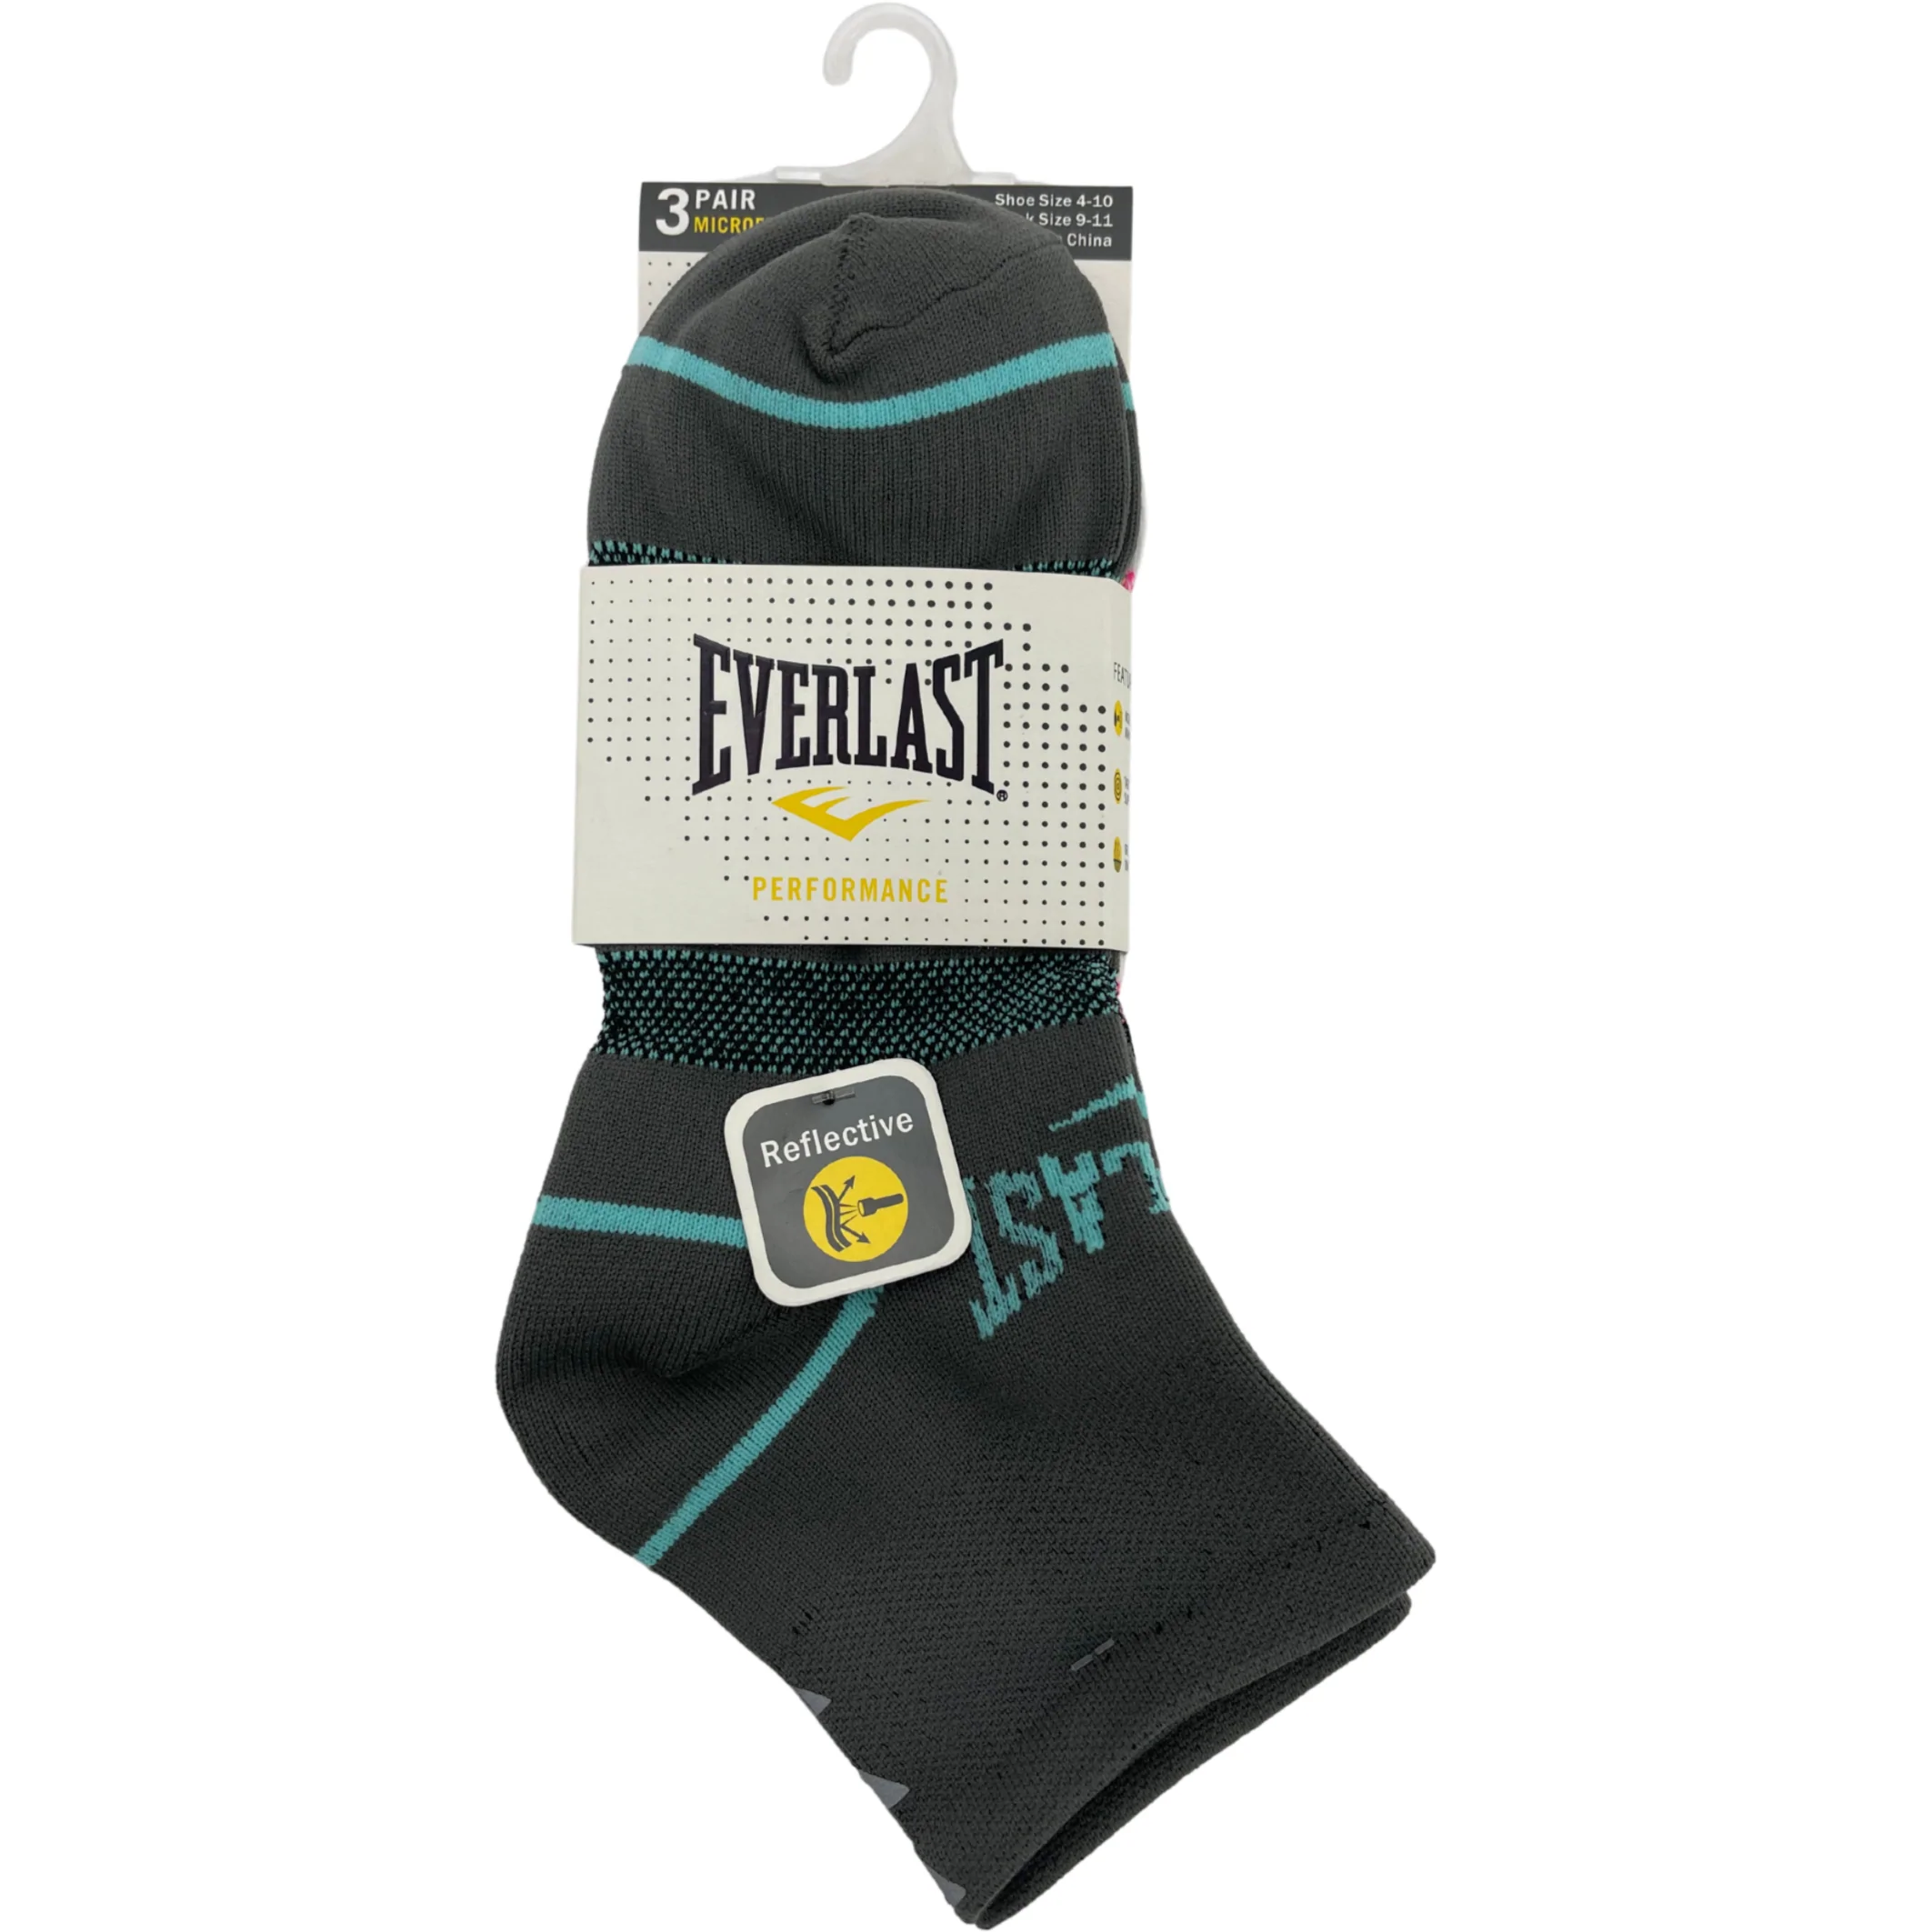 Everlast Women's Performance Socks / 3 Pack / Shoe Size 4-10